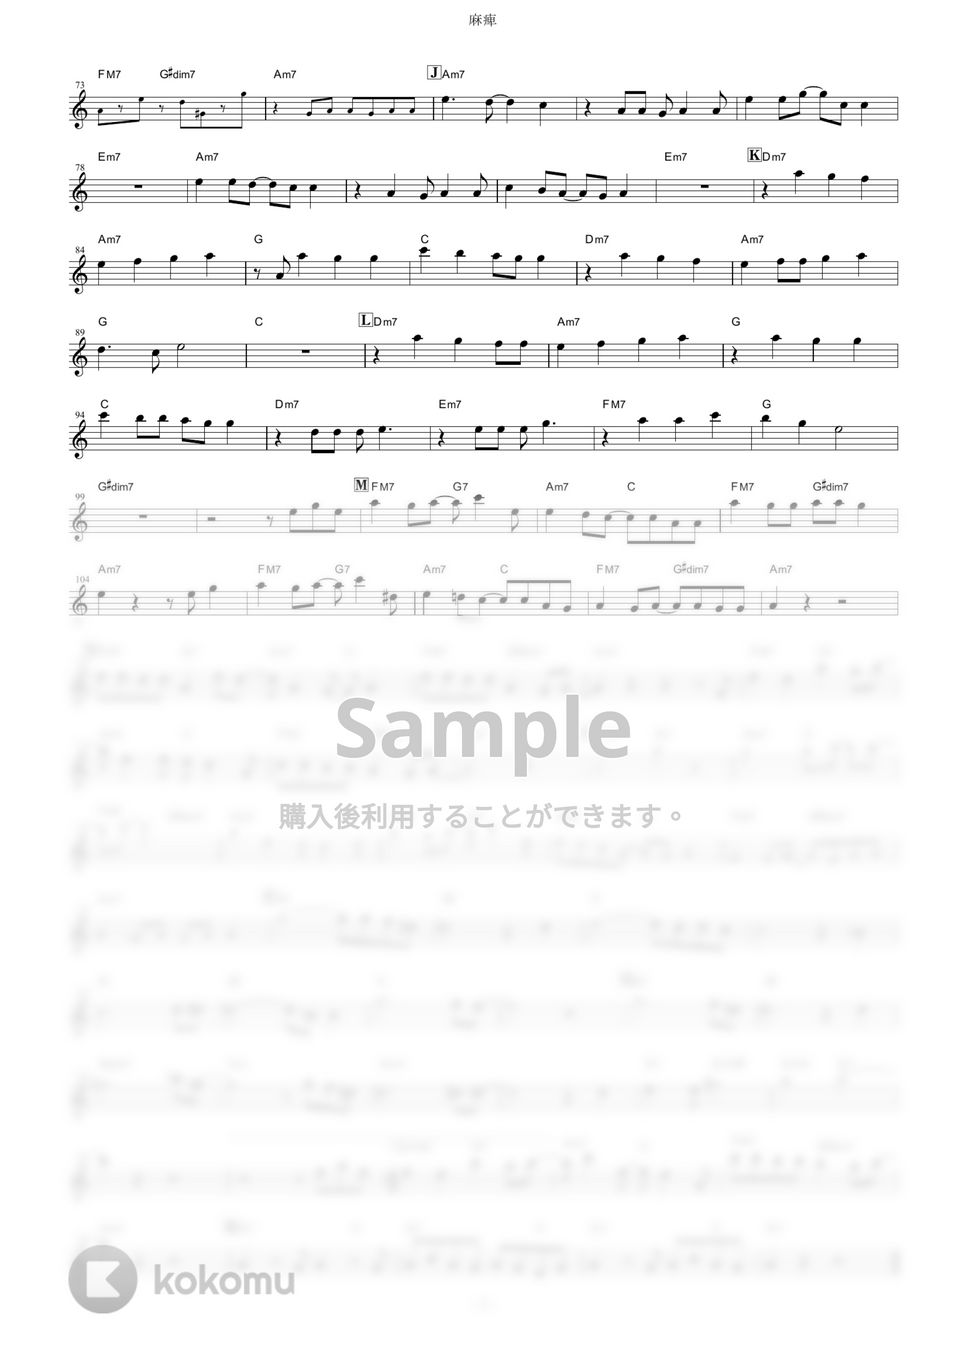 yama - 麻痺 (『2.43 清陰高校男子バレー部』 / in Eb) by muta-sax